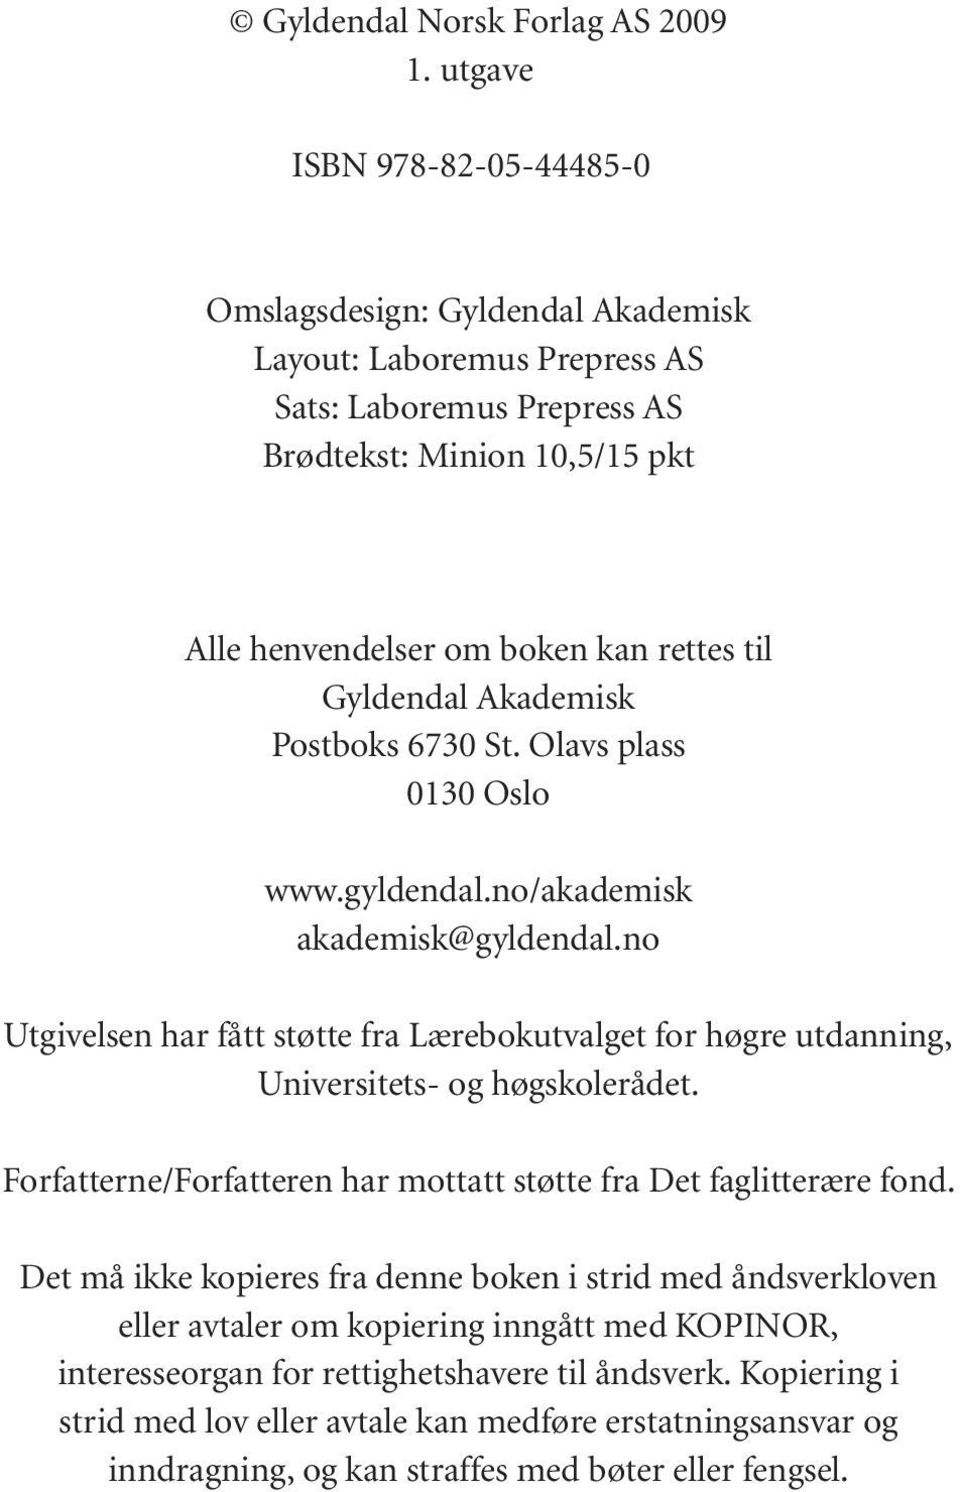 Gyldendal Akademisk Postboks 6730 St. Olavs plass 0130 Oslo www.gyldendal.no/akademisk akademisk@gyldendal.